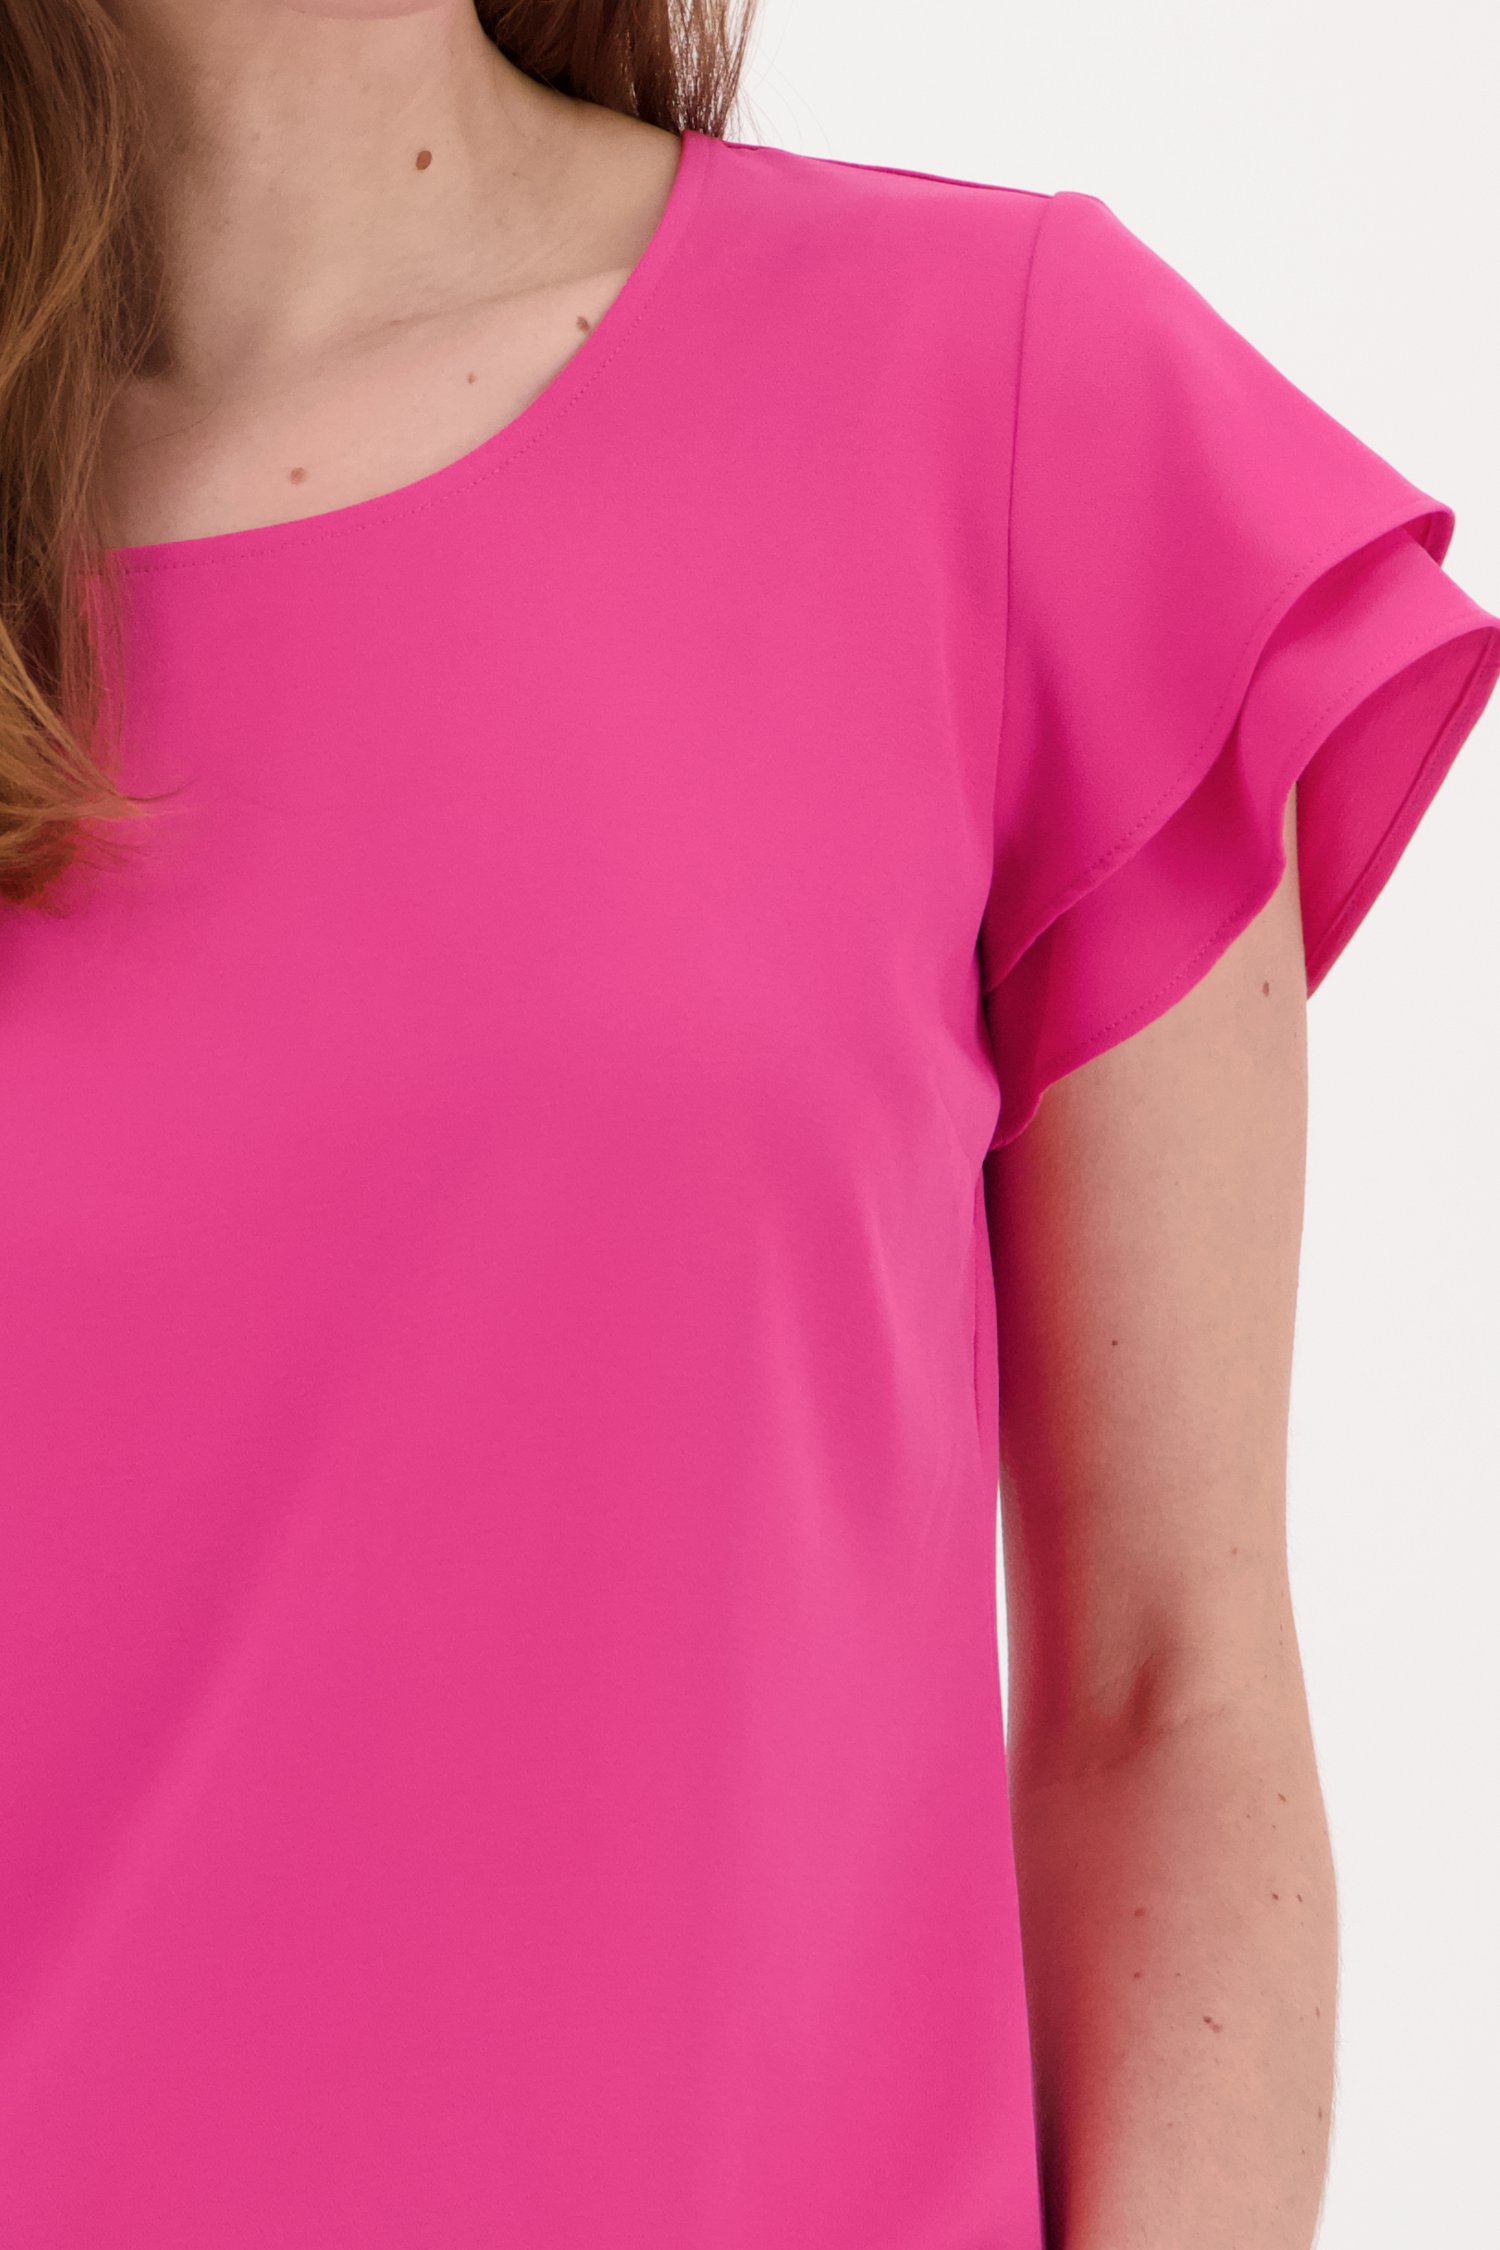 Roze blouse met korte volant-mouwen van Claude Arielle voor Dames